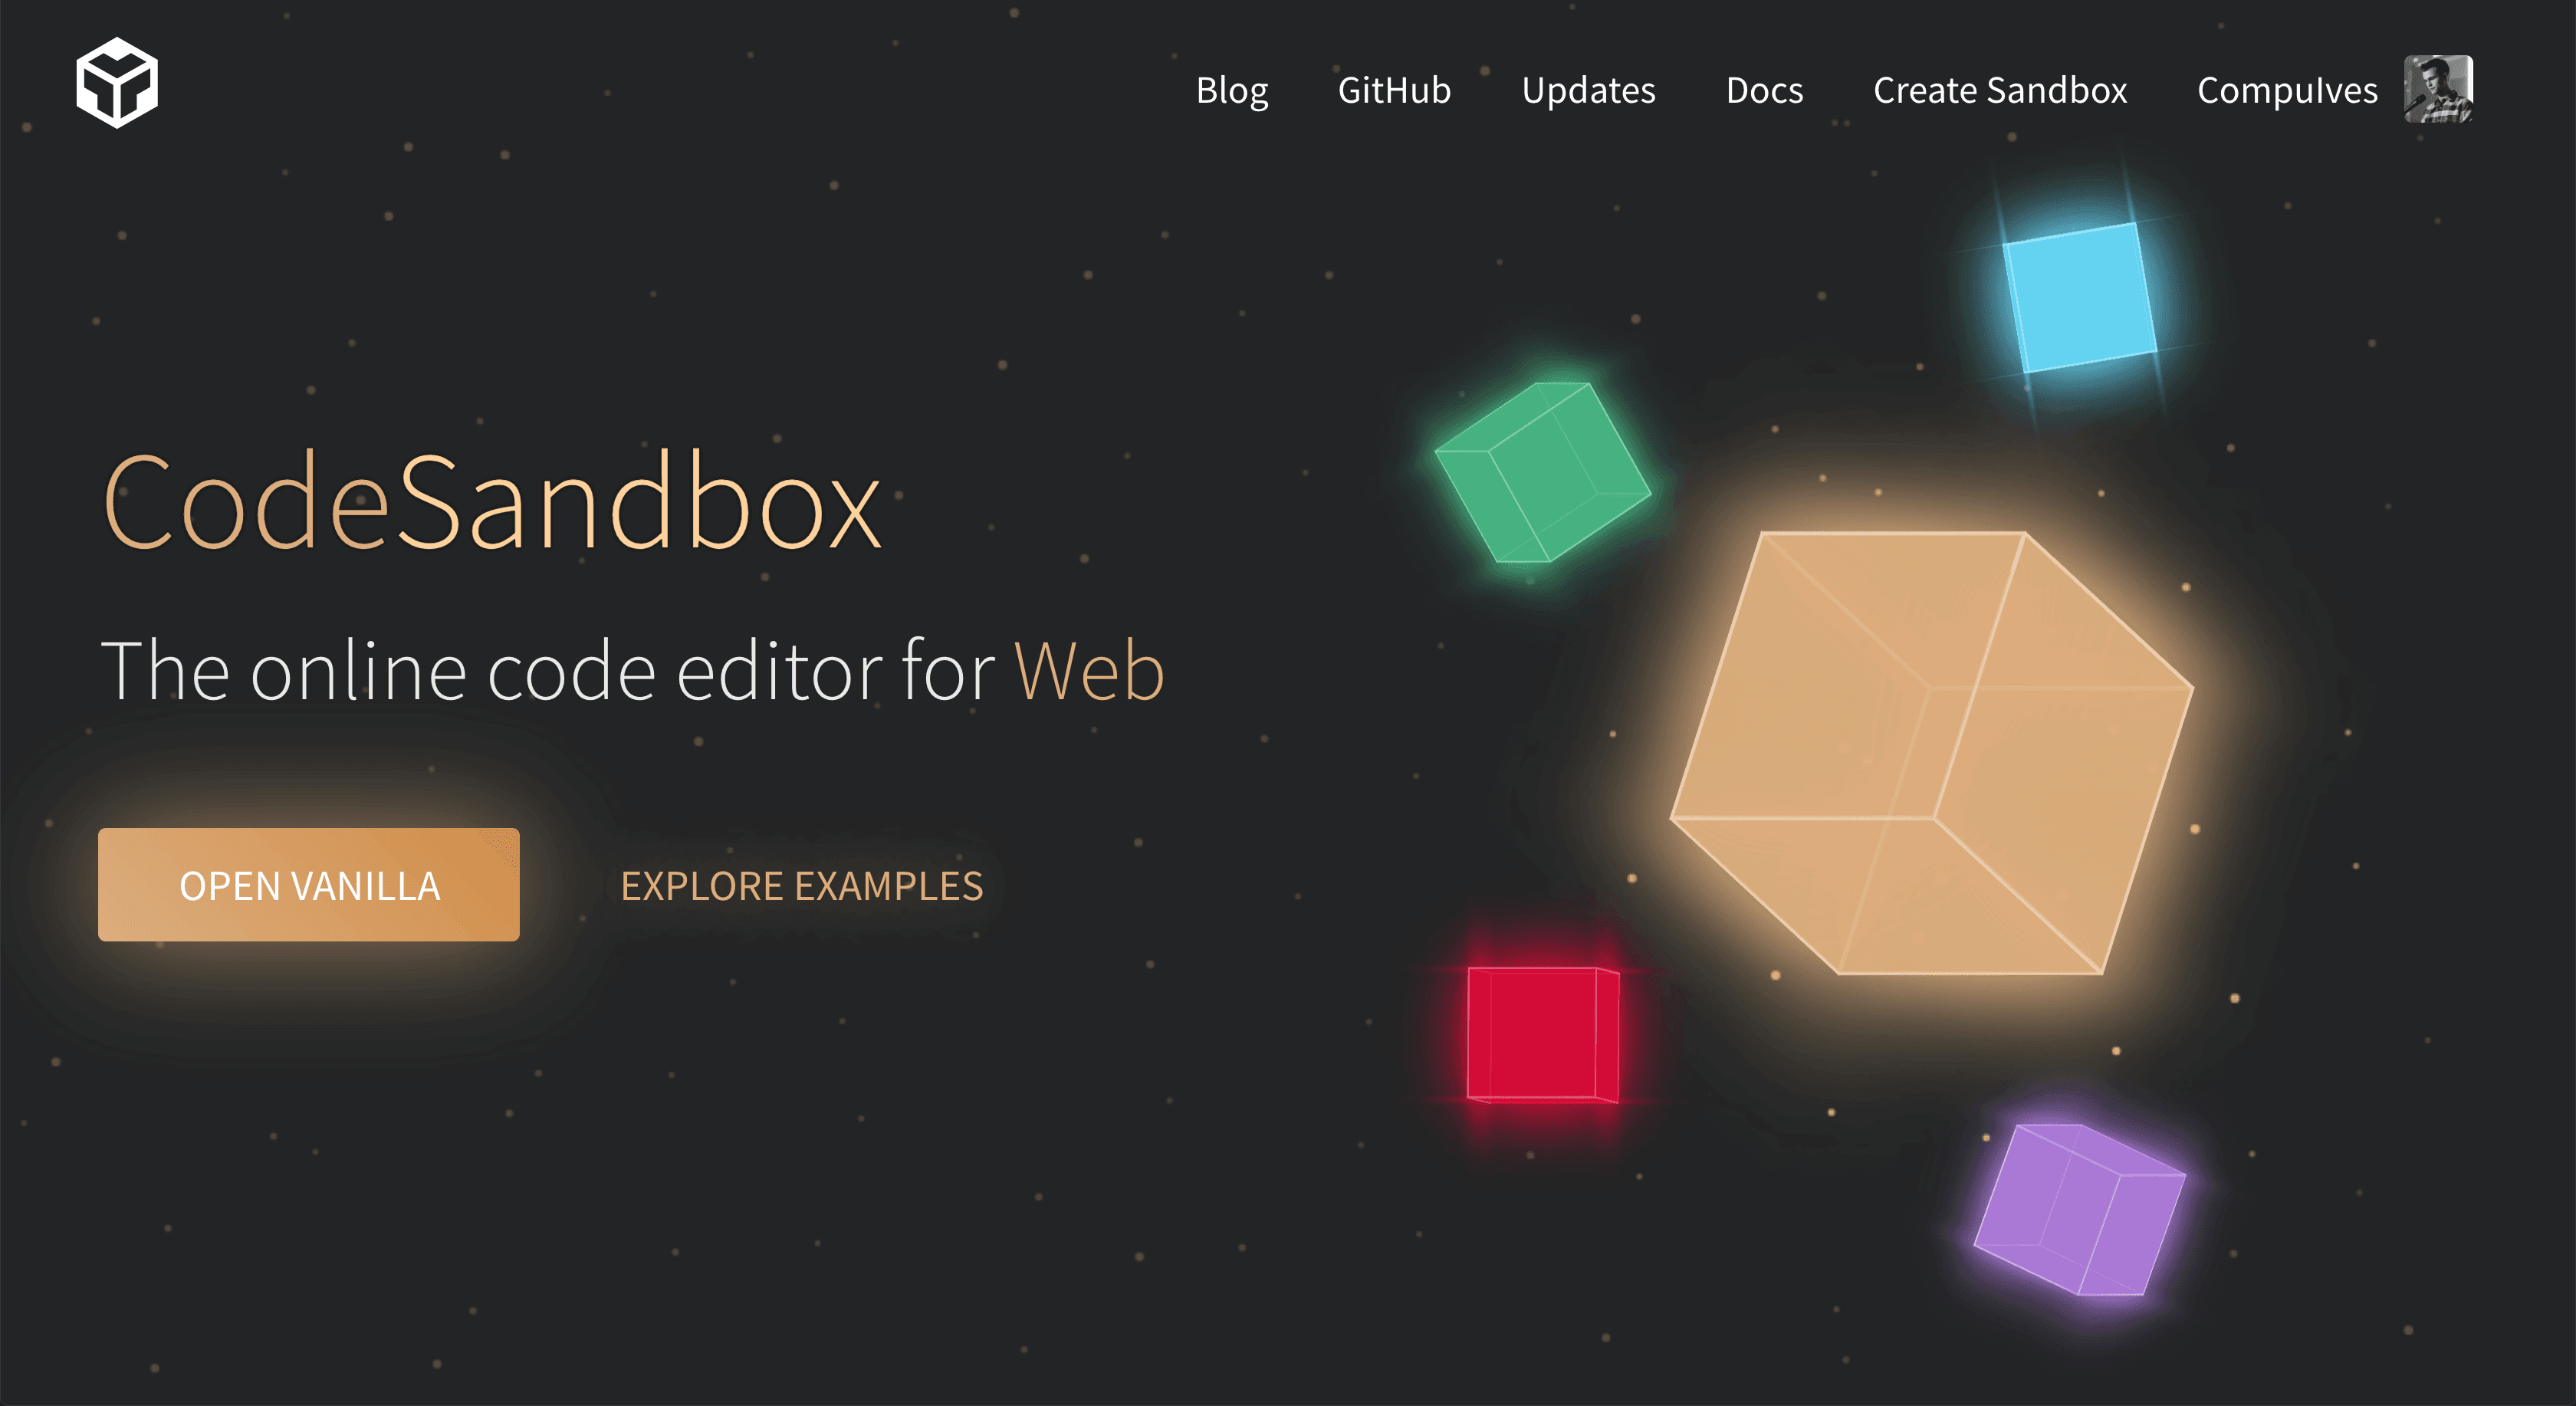 What's Unique About CodeSandbox